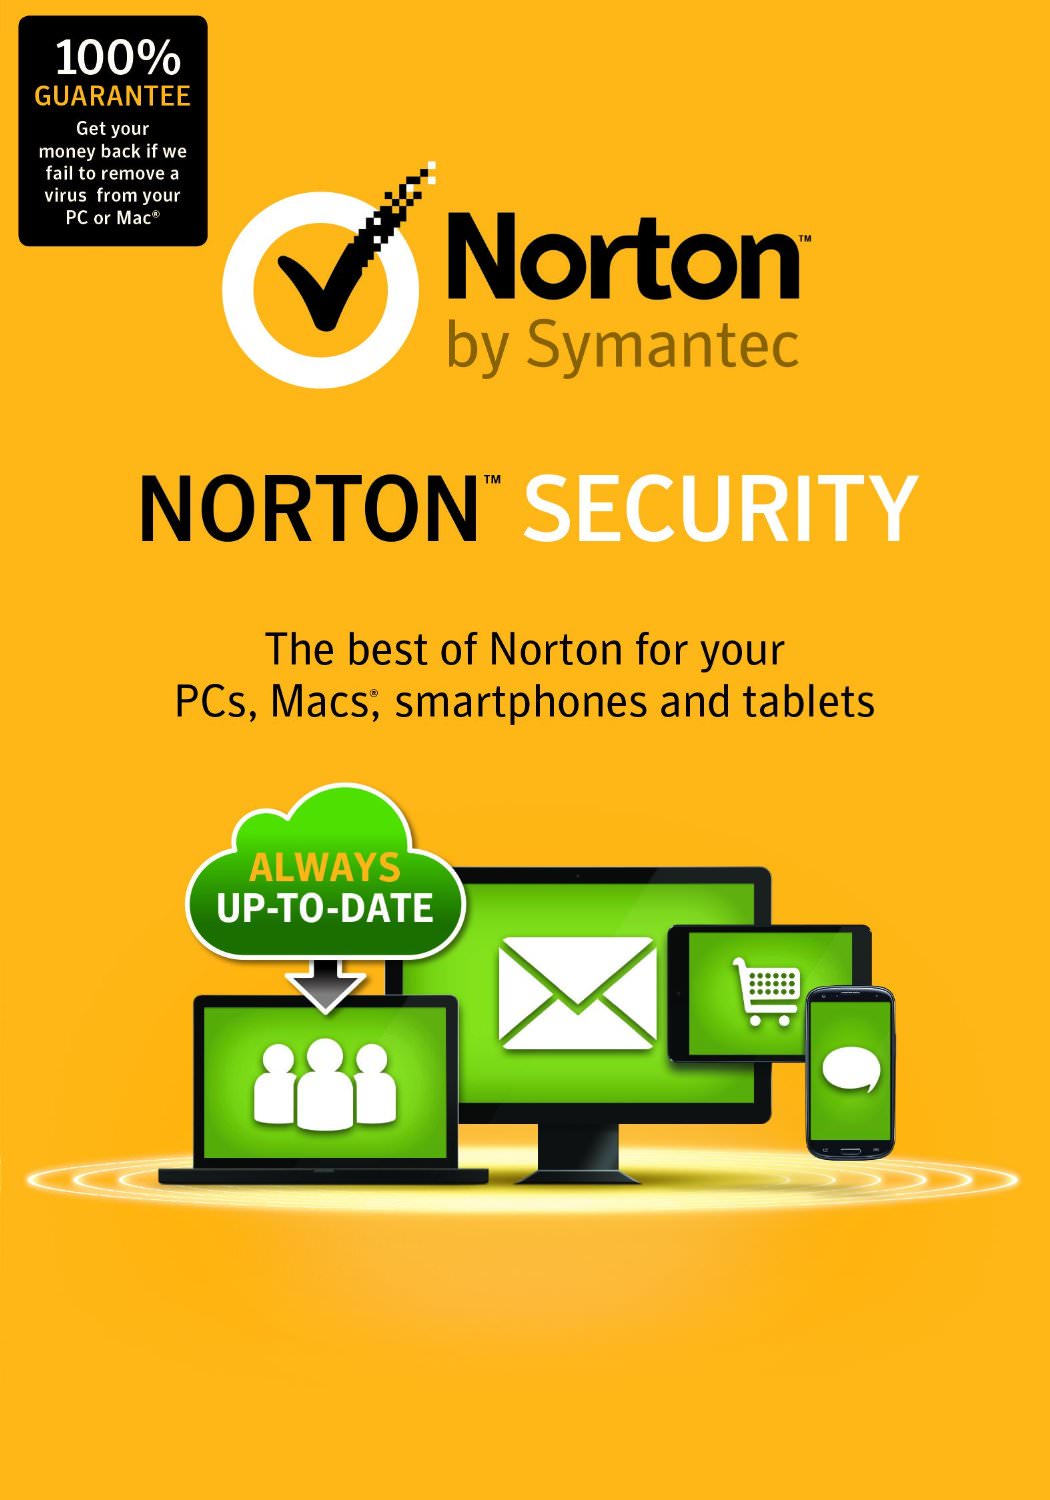 norton antivirus download free trial 90 days